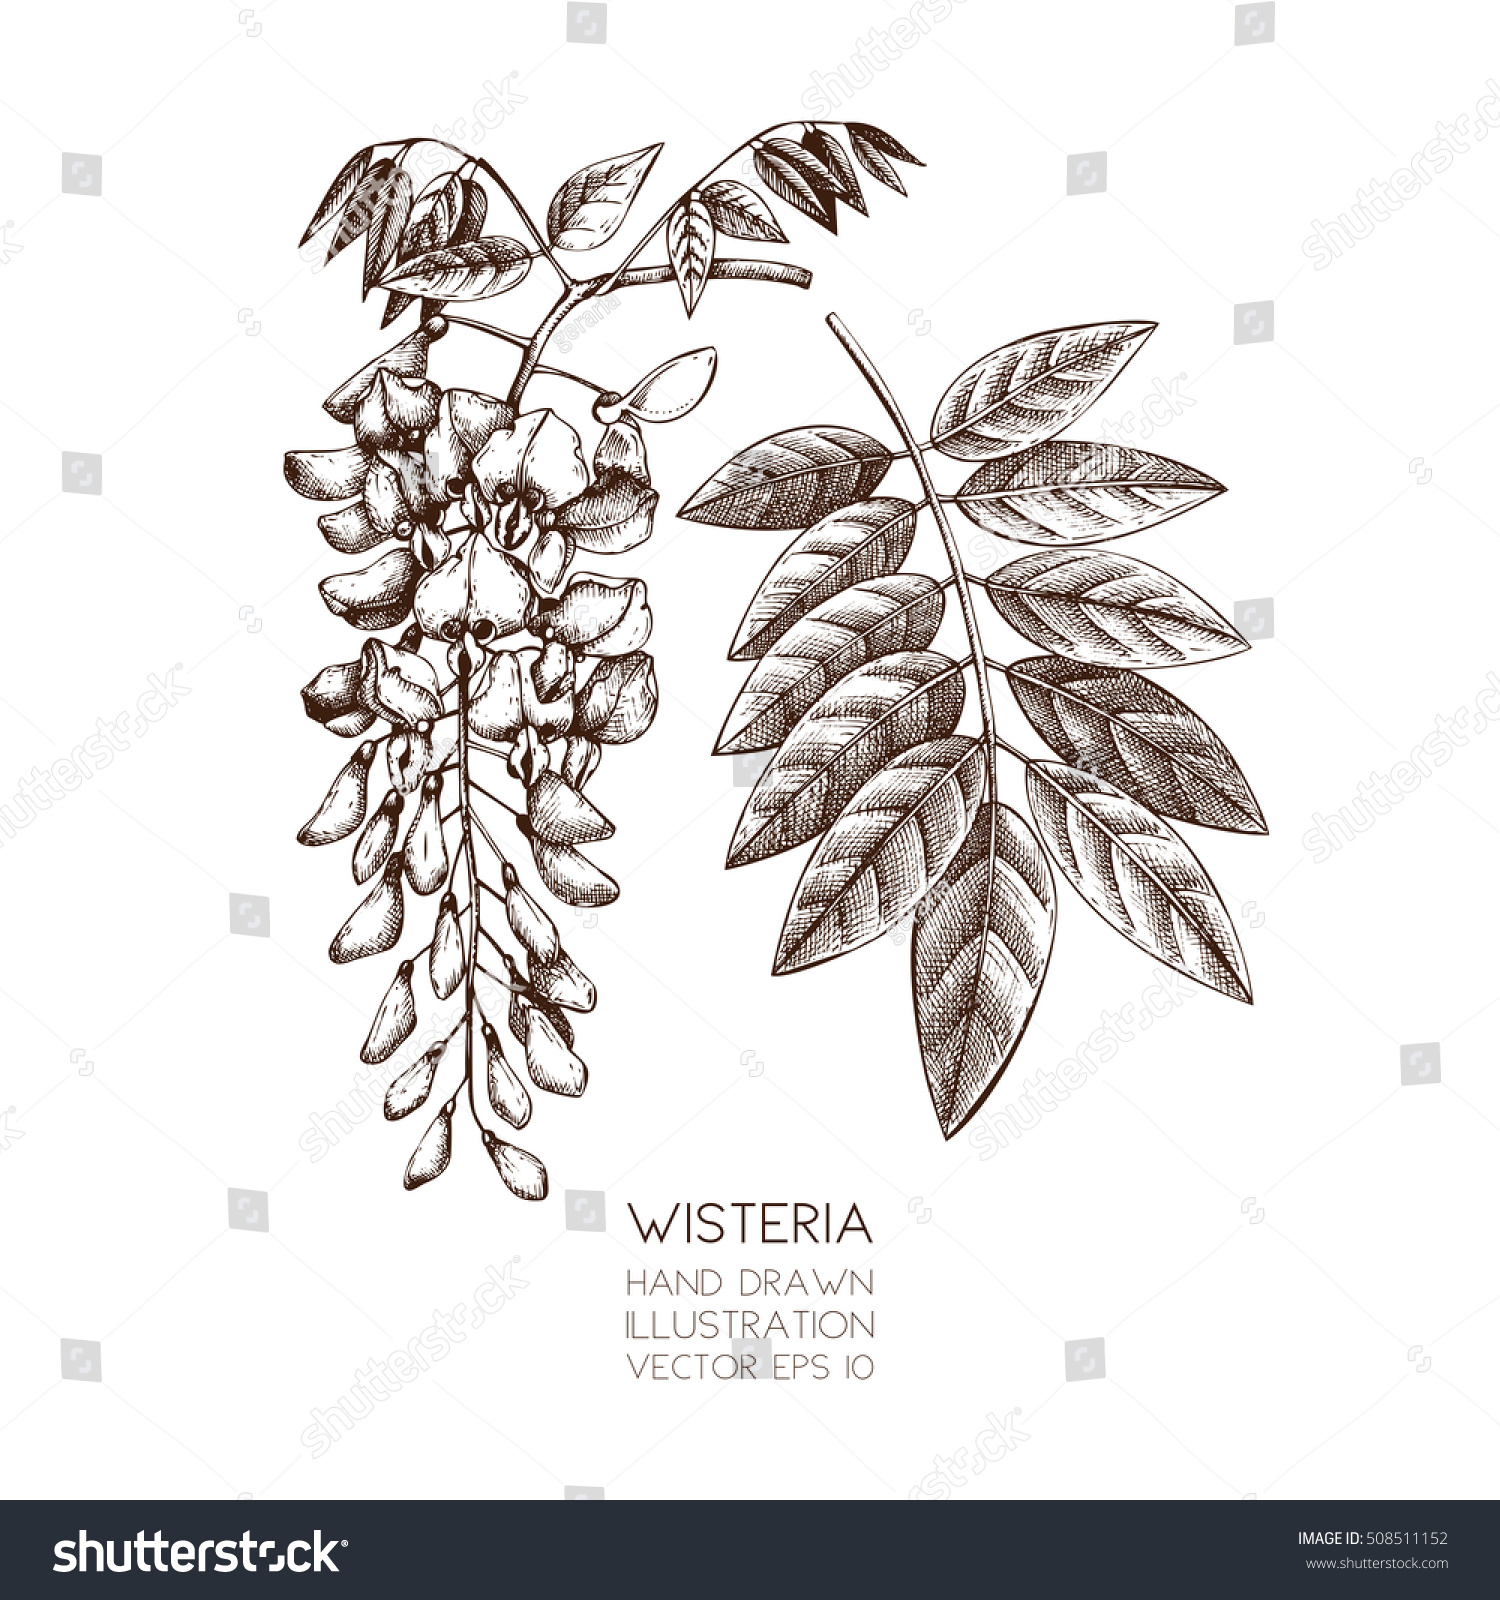 SVG of Hand drawn Wisteria flower illustration. Vector blossomed tree sketch on white background.
Vintage botanical  illustration. svg